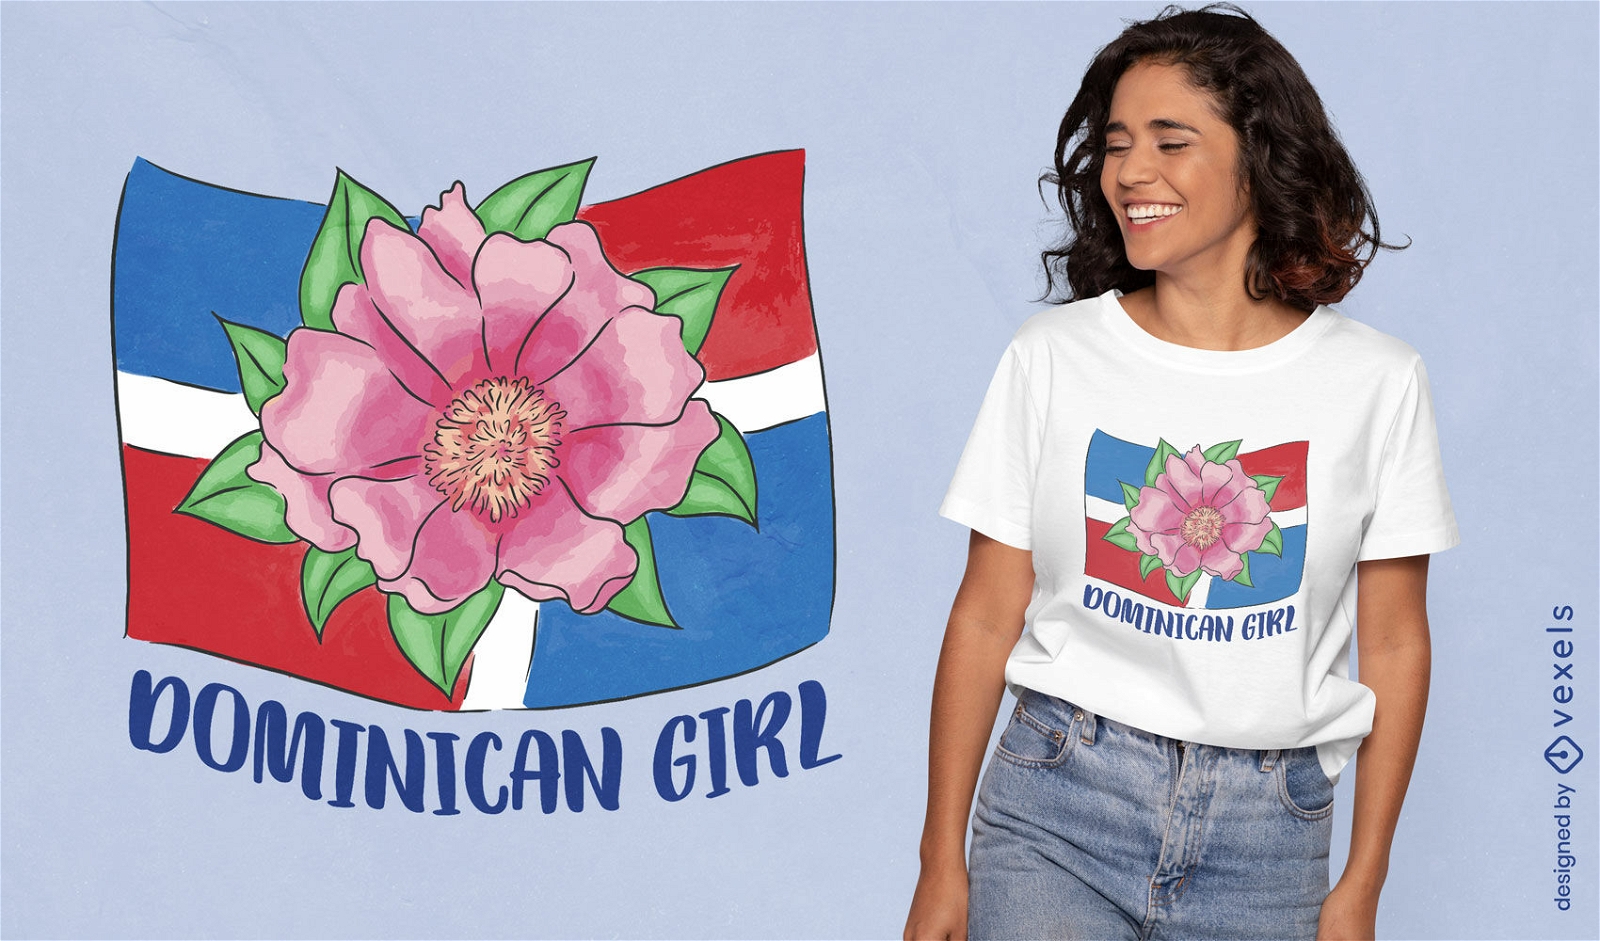 Dise?o de camiseta de bandera de ni?a dominicana.